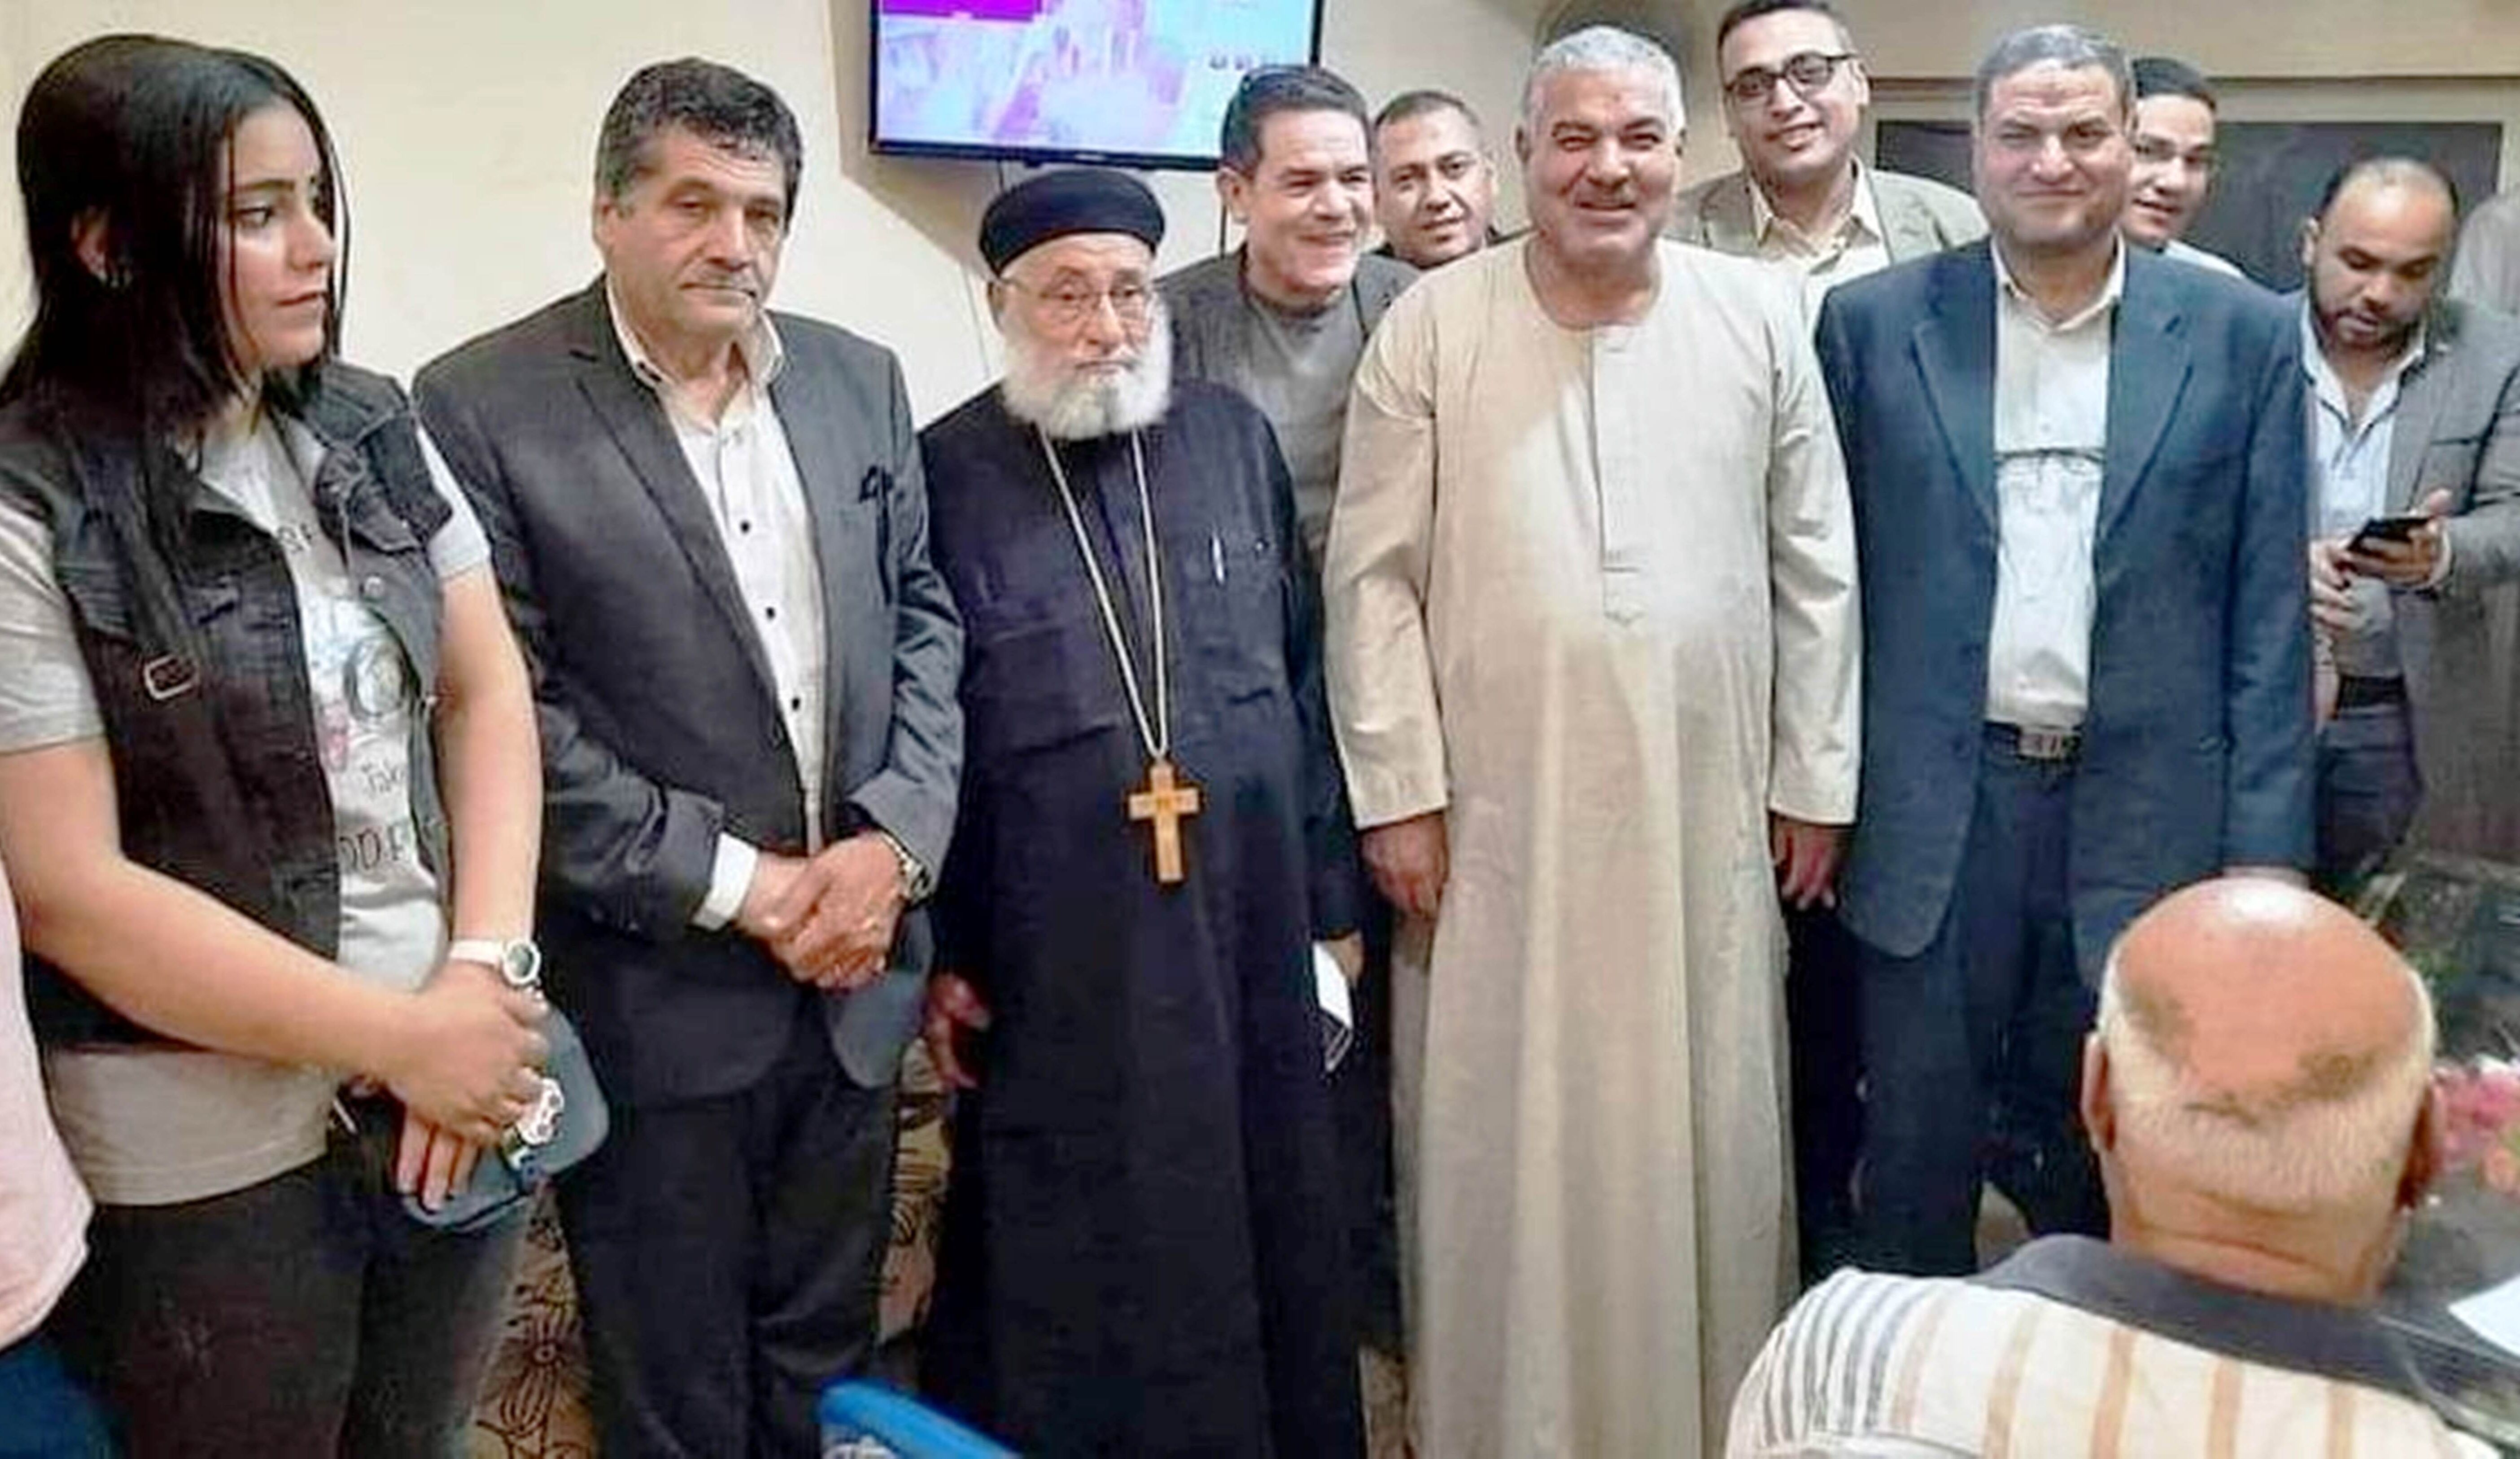 Bischof mit anderen Christen